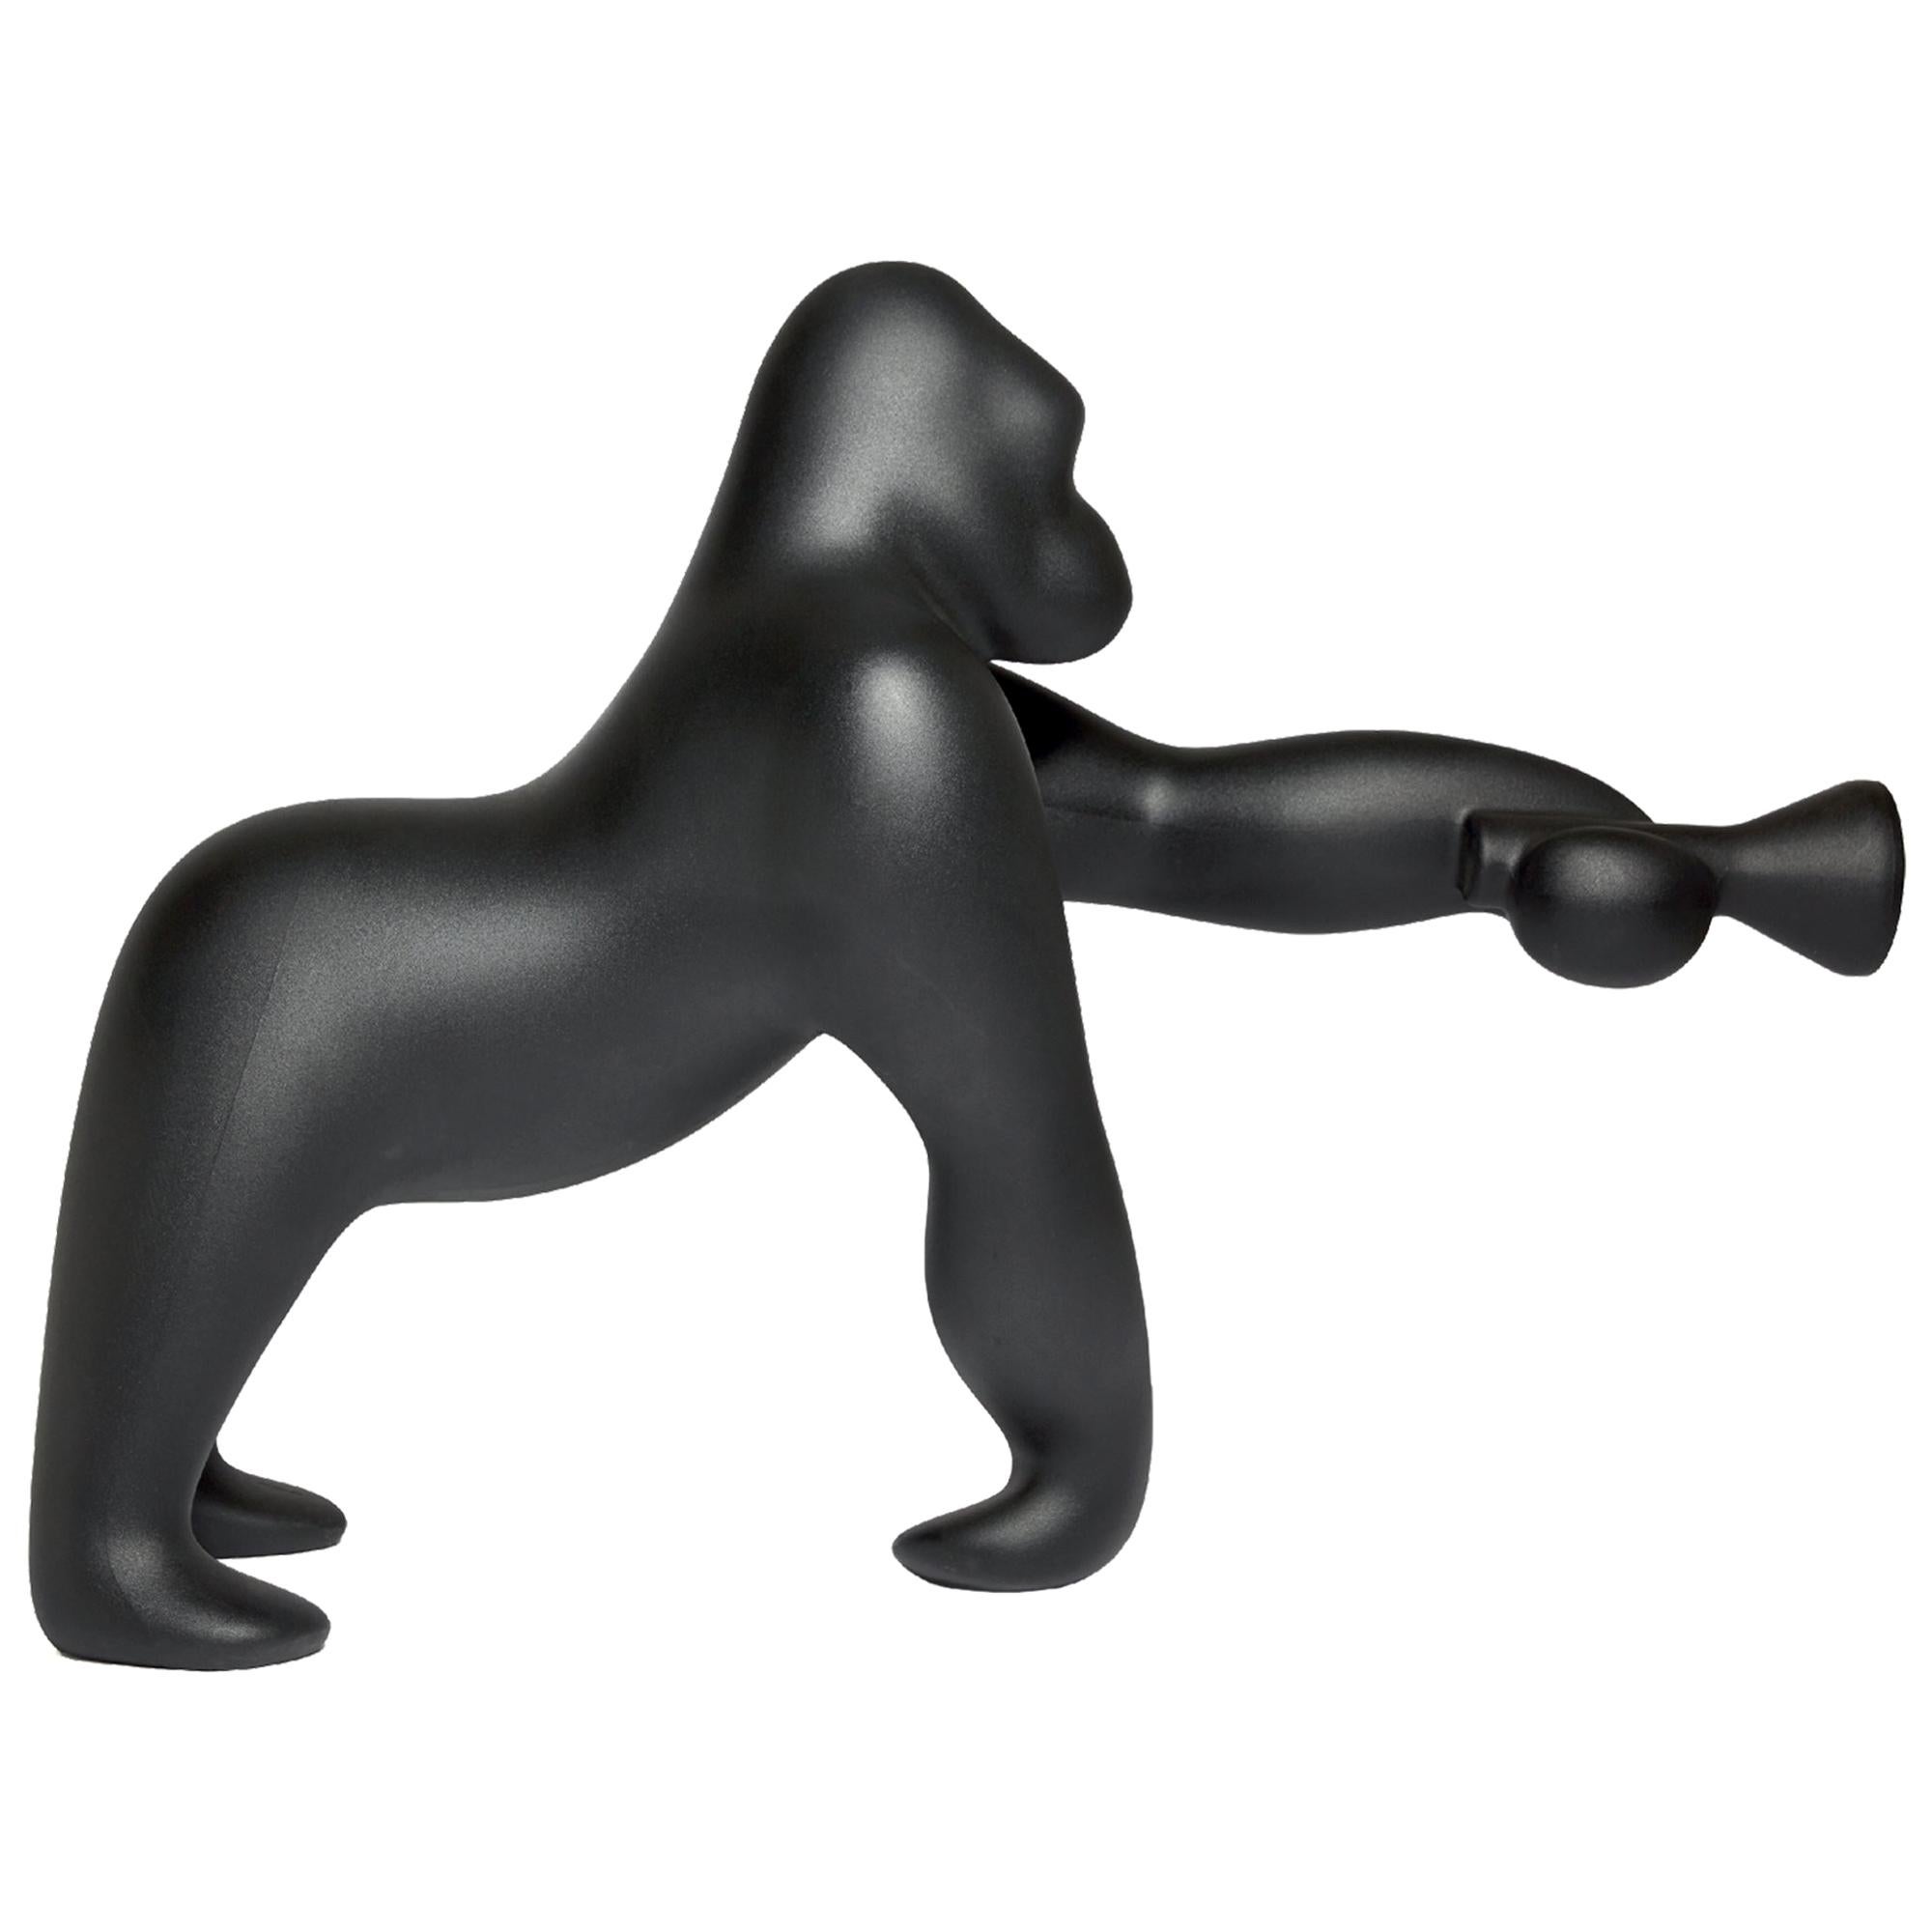 Lampadaire Kong Black Gorilla conçu par Stefano Giovannoni, fabriqué en Italie